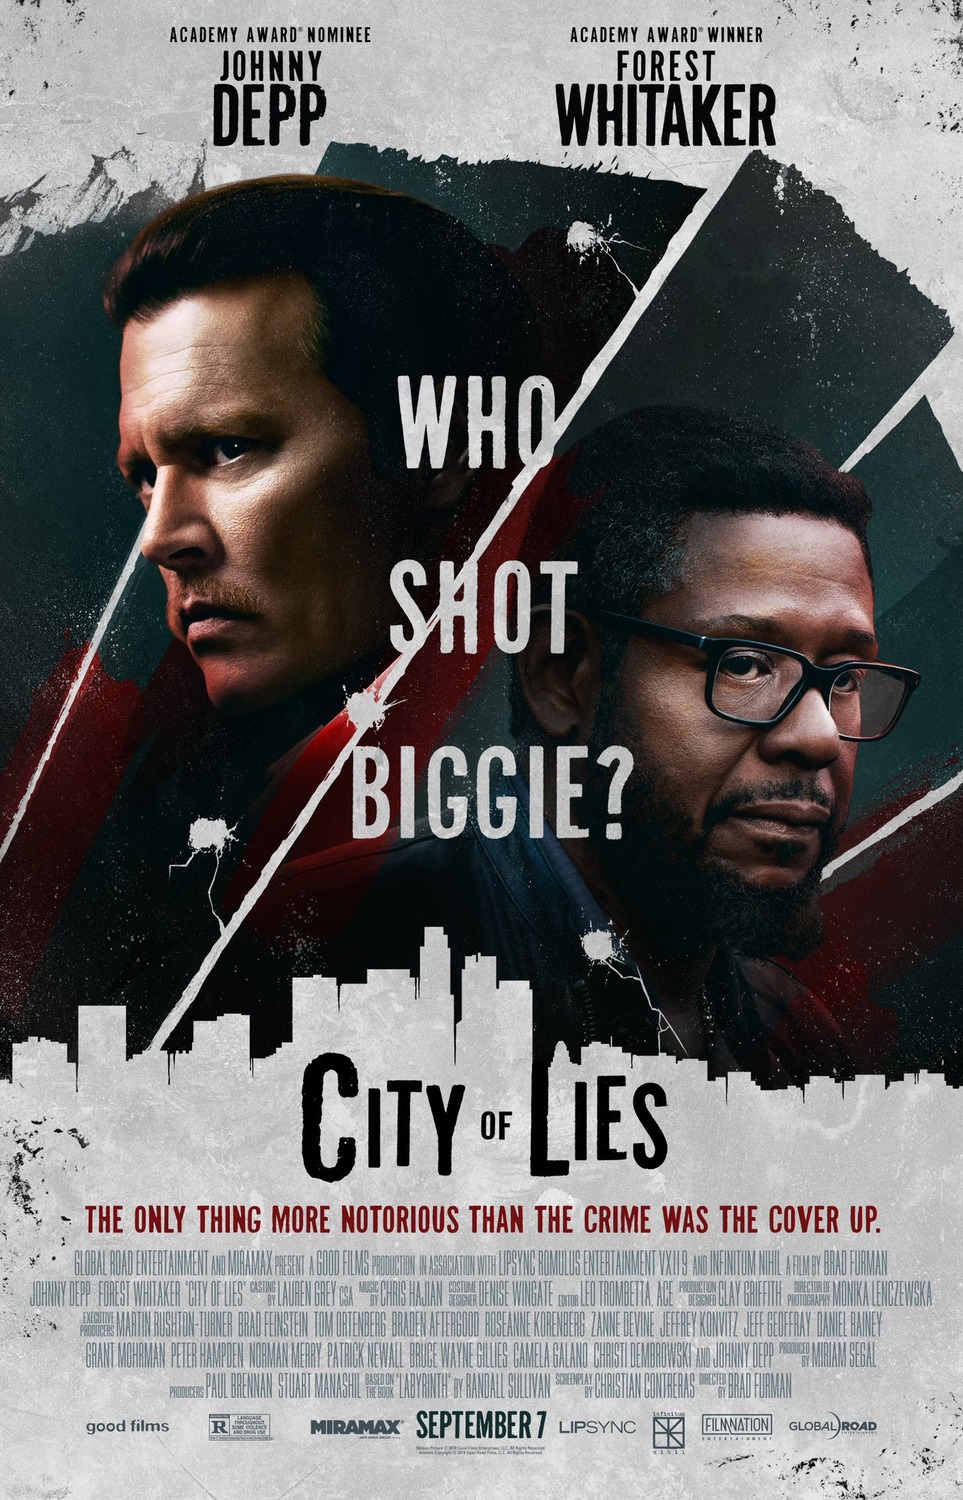 Banco Israelí demanda por cancelación del estreno de City of Lies